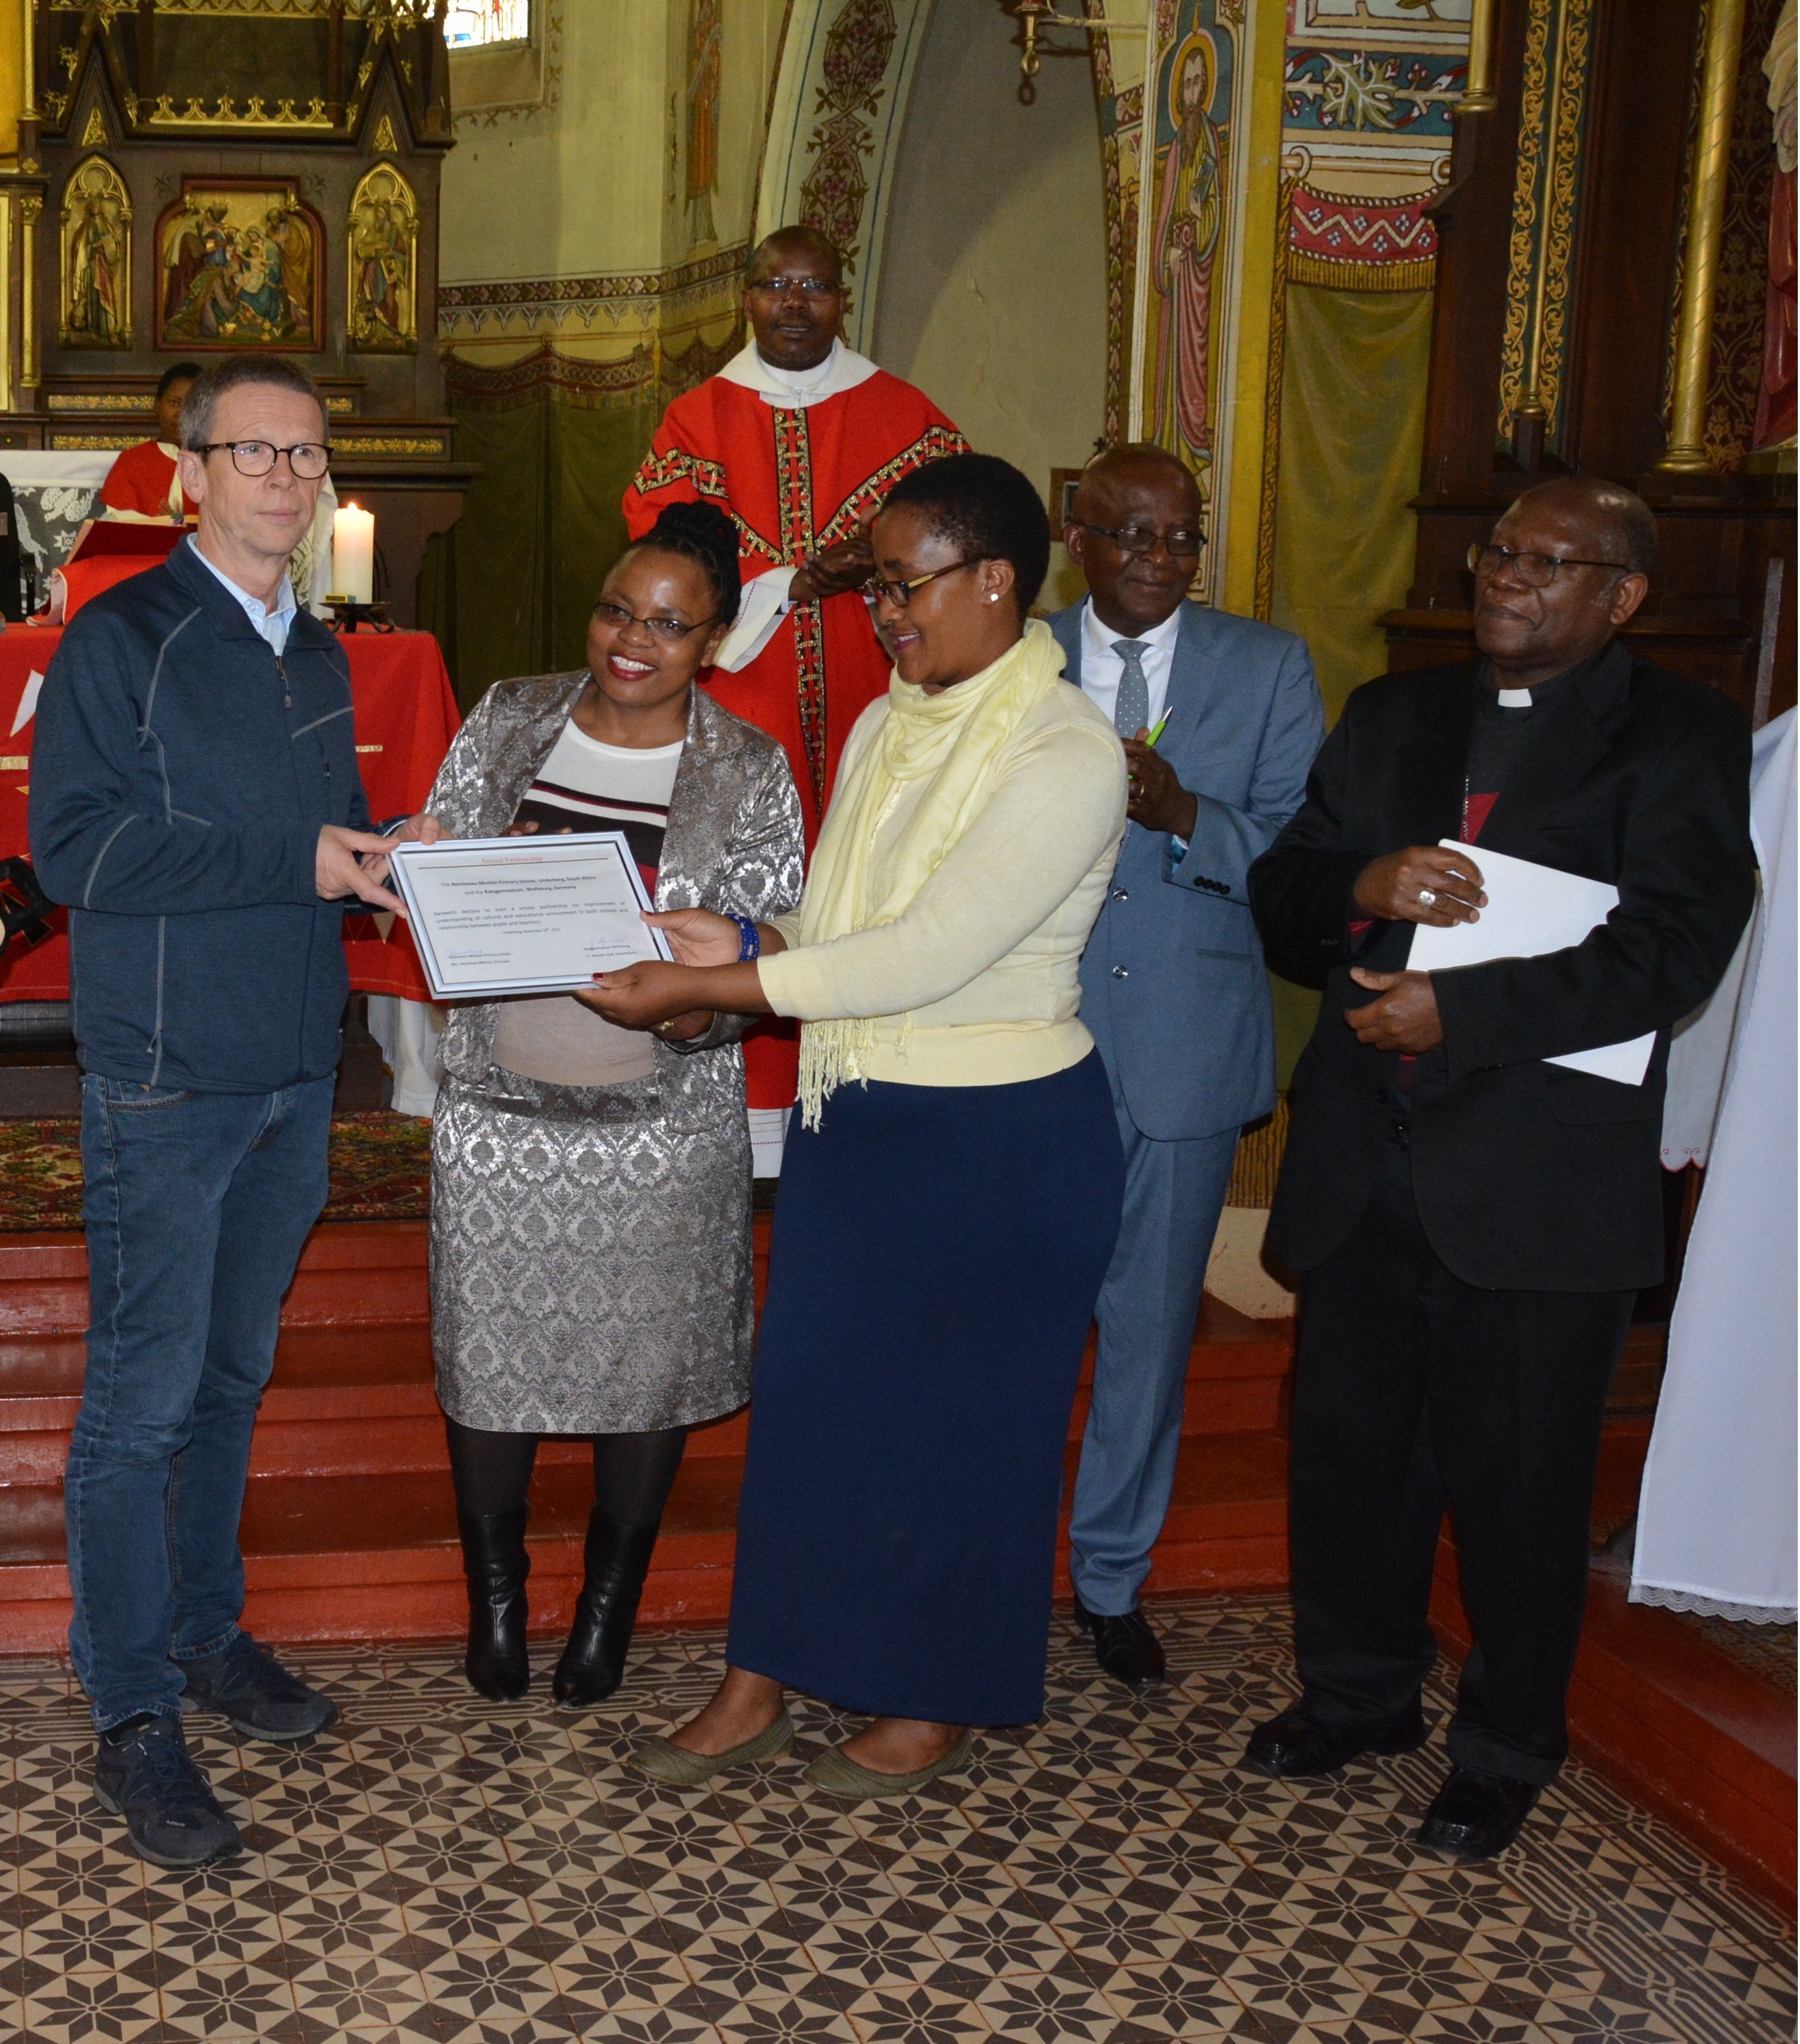 Oberbürgermeister Klaus Mohrs (links) überreicht die Urkunde zur Schulpartnerschaft an Schulleiterin Nombuso Mkhize (3.v.r.) in Anwesenheit von Bischof Pius Mlungisi Dlungwane (rechts)